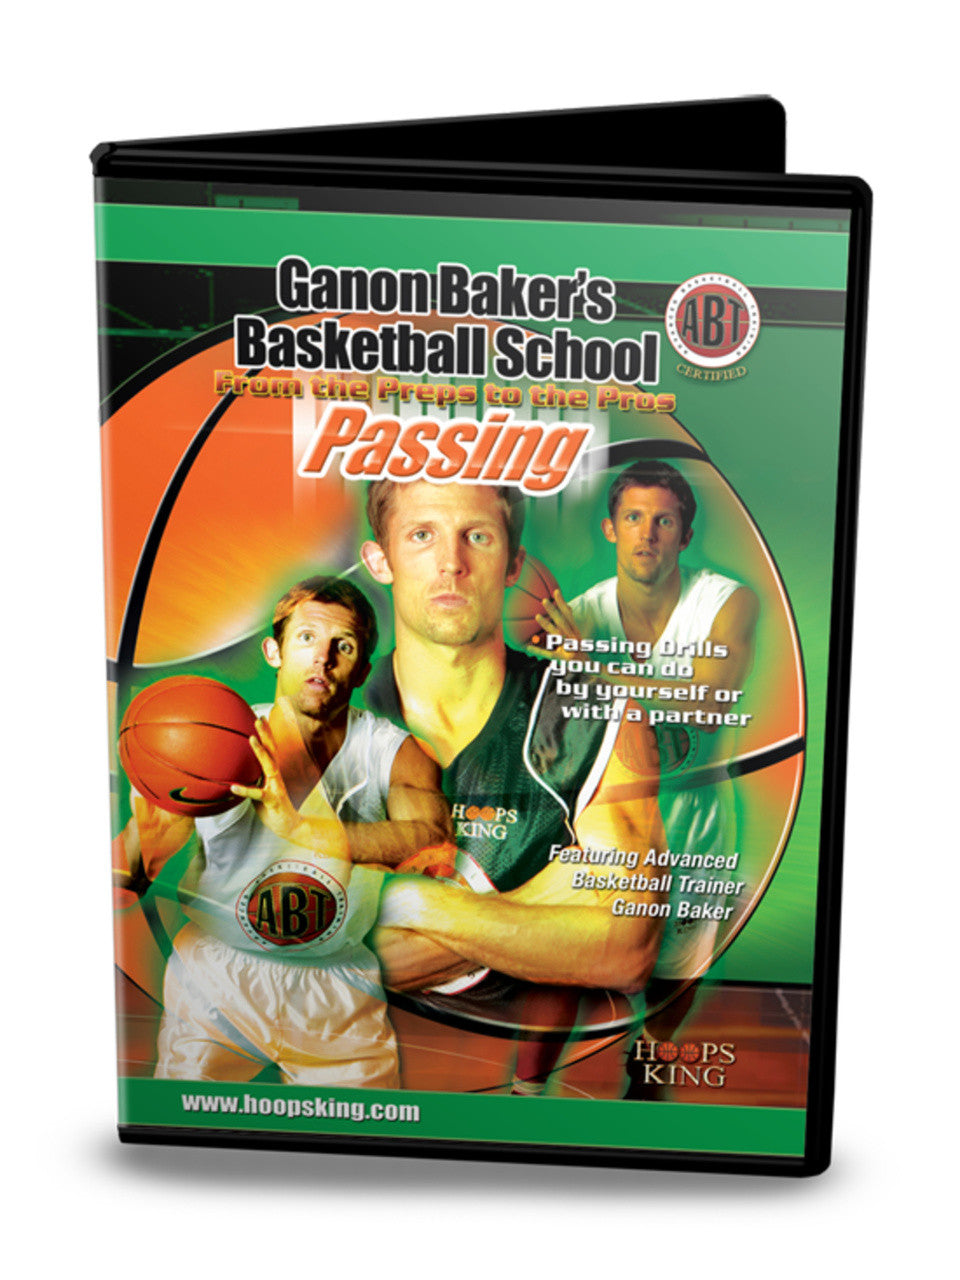 Ganon Baker Passing DVD.